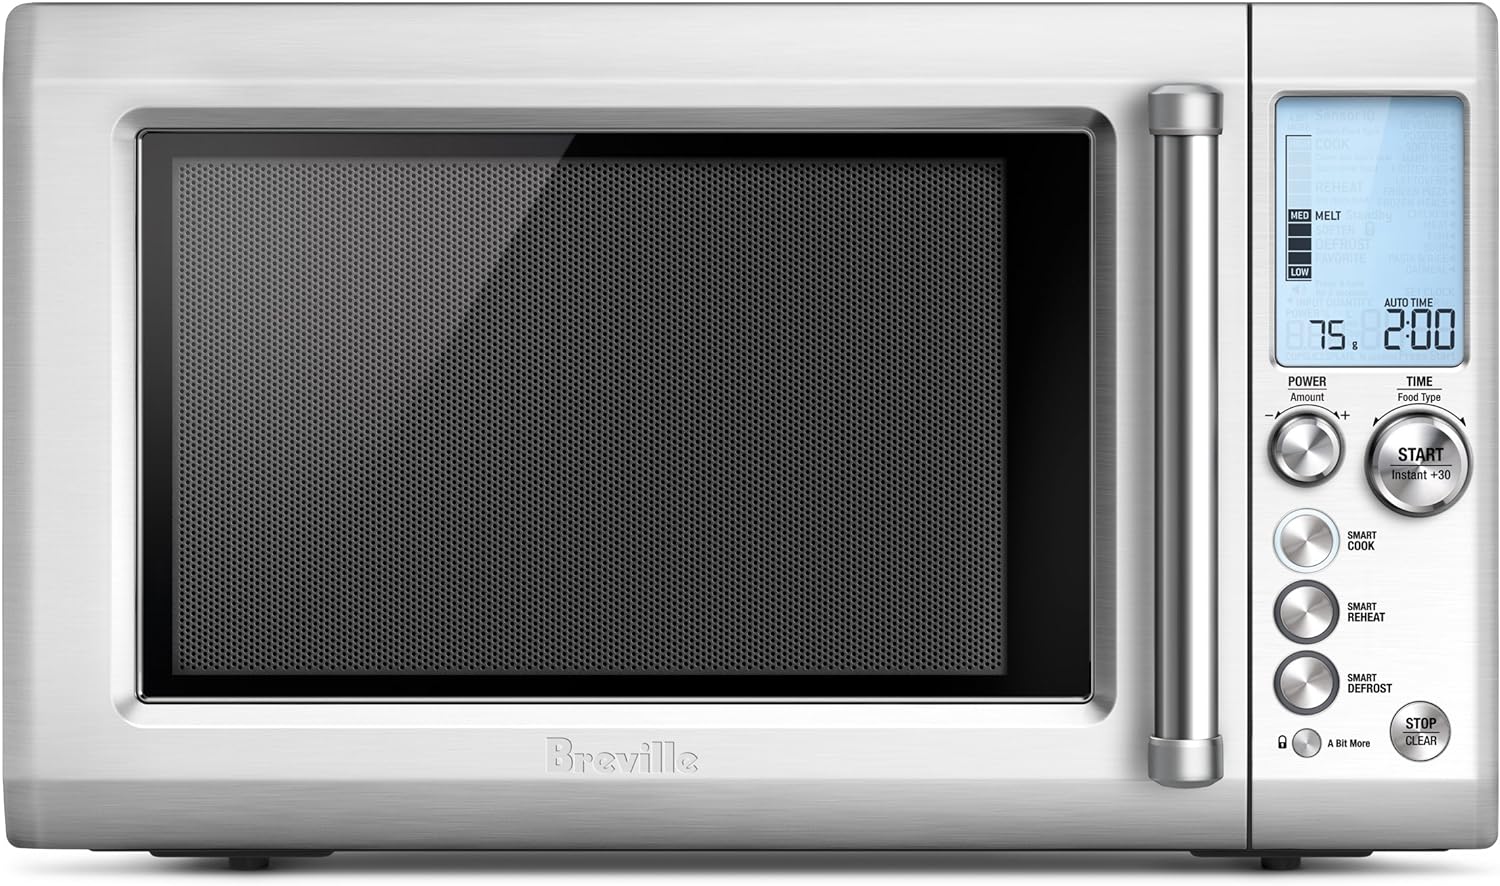 Expérience de cuisine haut de gamme avec le four à micro-ondes Quick Touch Breville BMO734XL